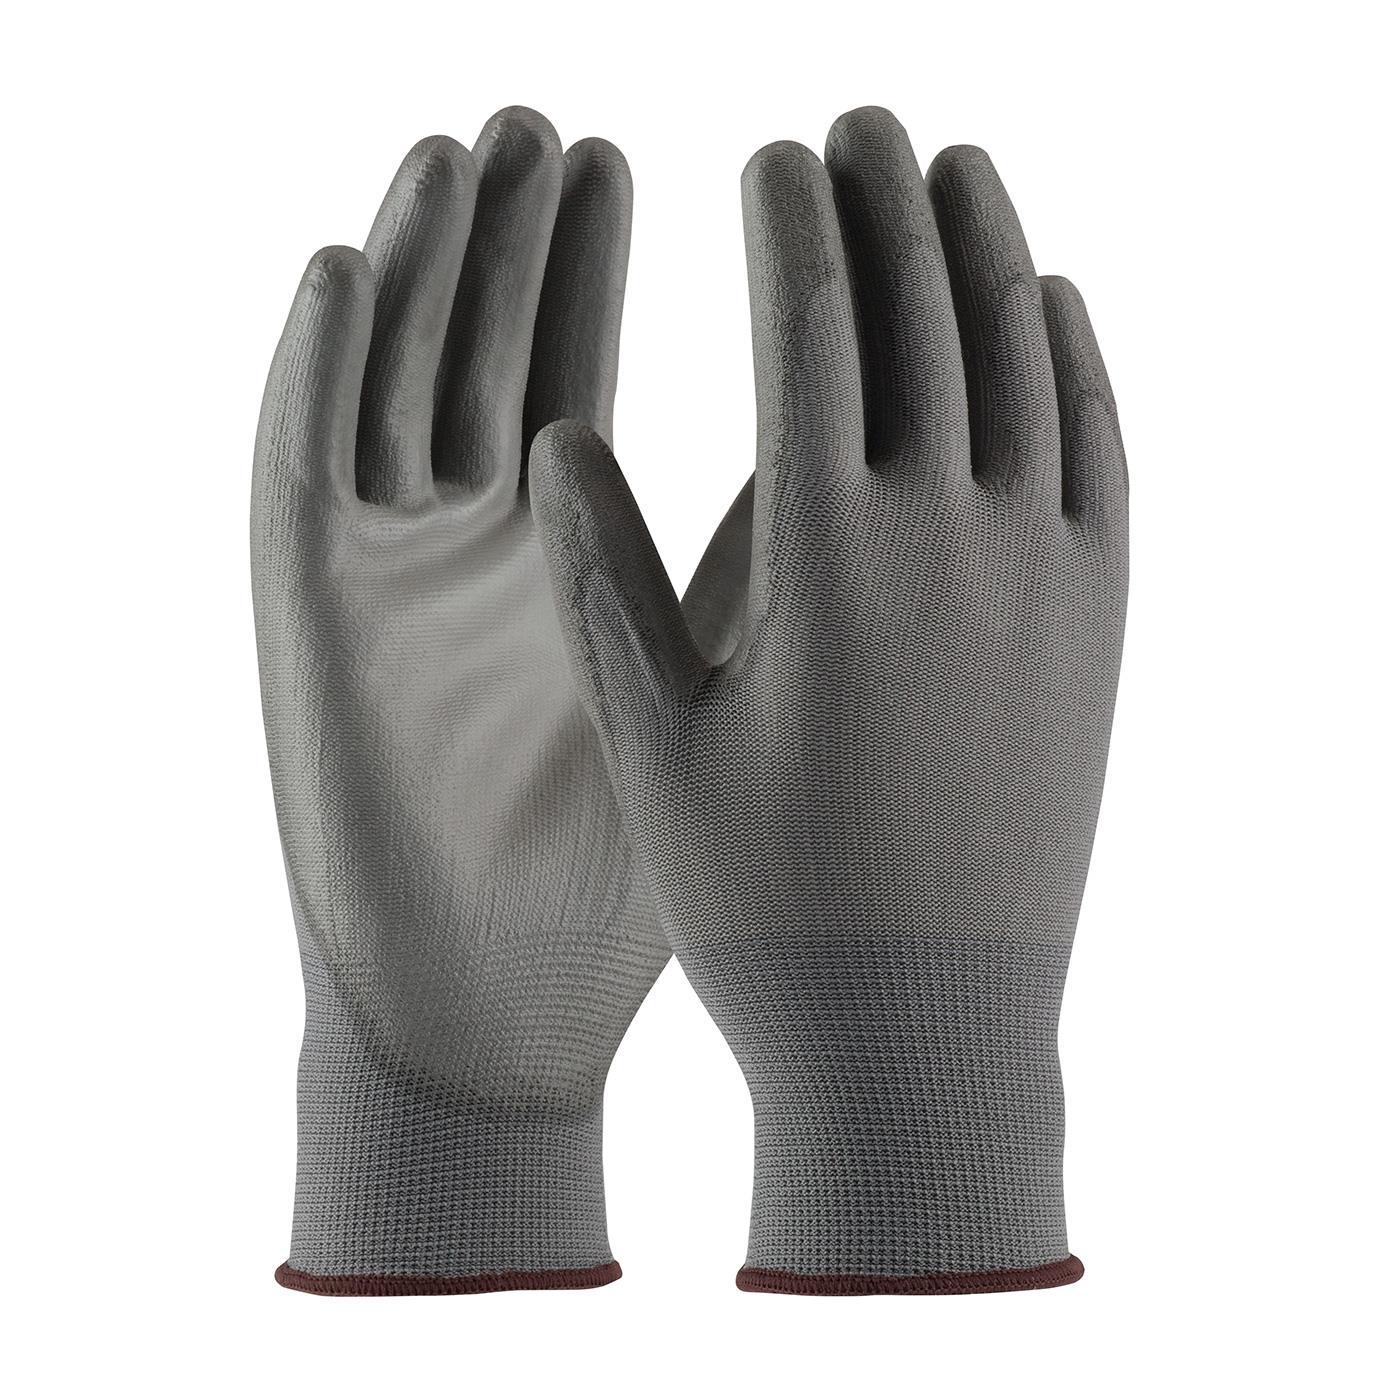 G-TEK ECONOMY GRAY PU PALM COATED - Polyurethane Coated Gloves